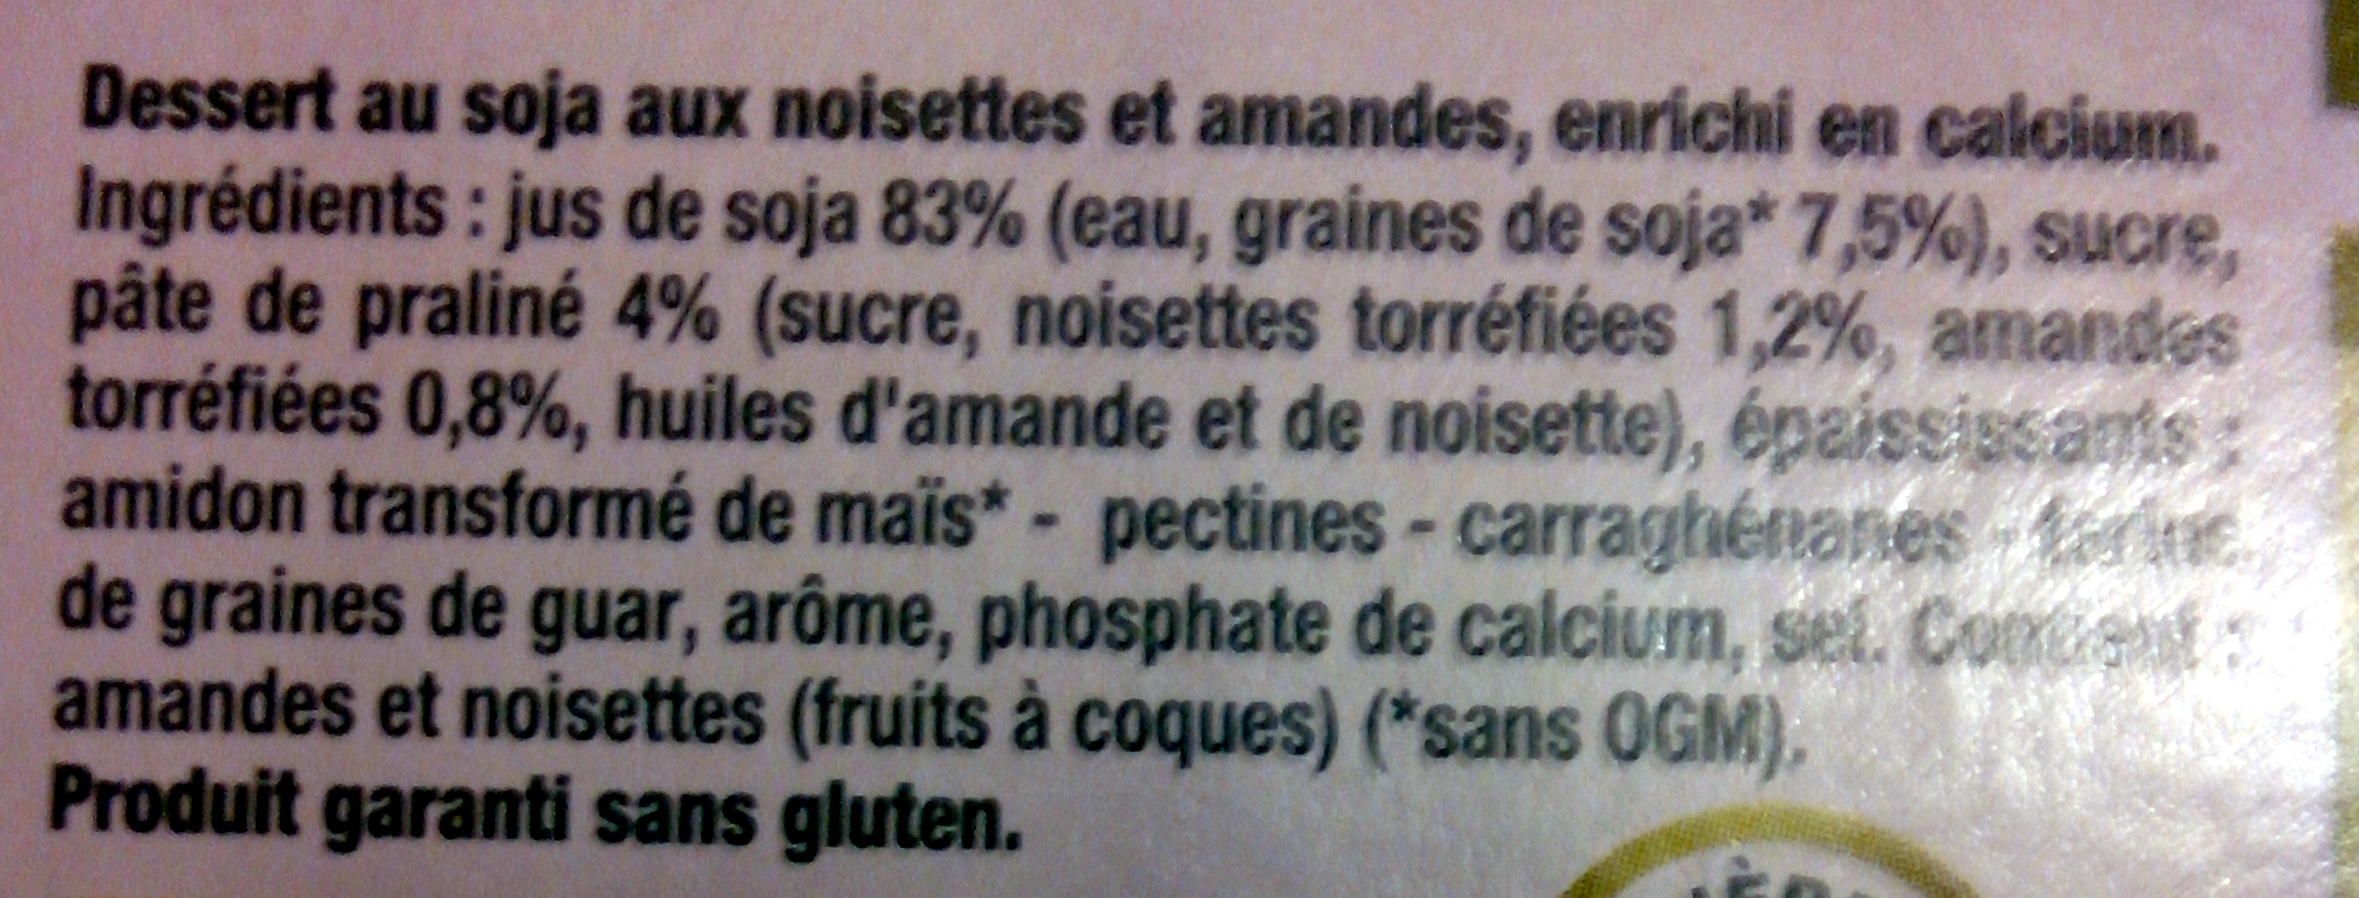 Dessert végétal, Noisettes Amandes (4 Pots) - Ingredients - fr